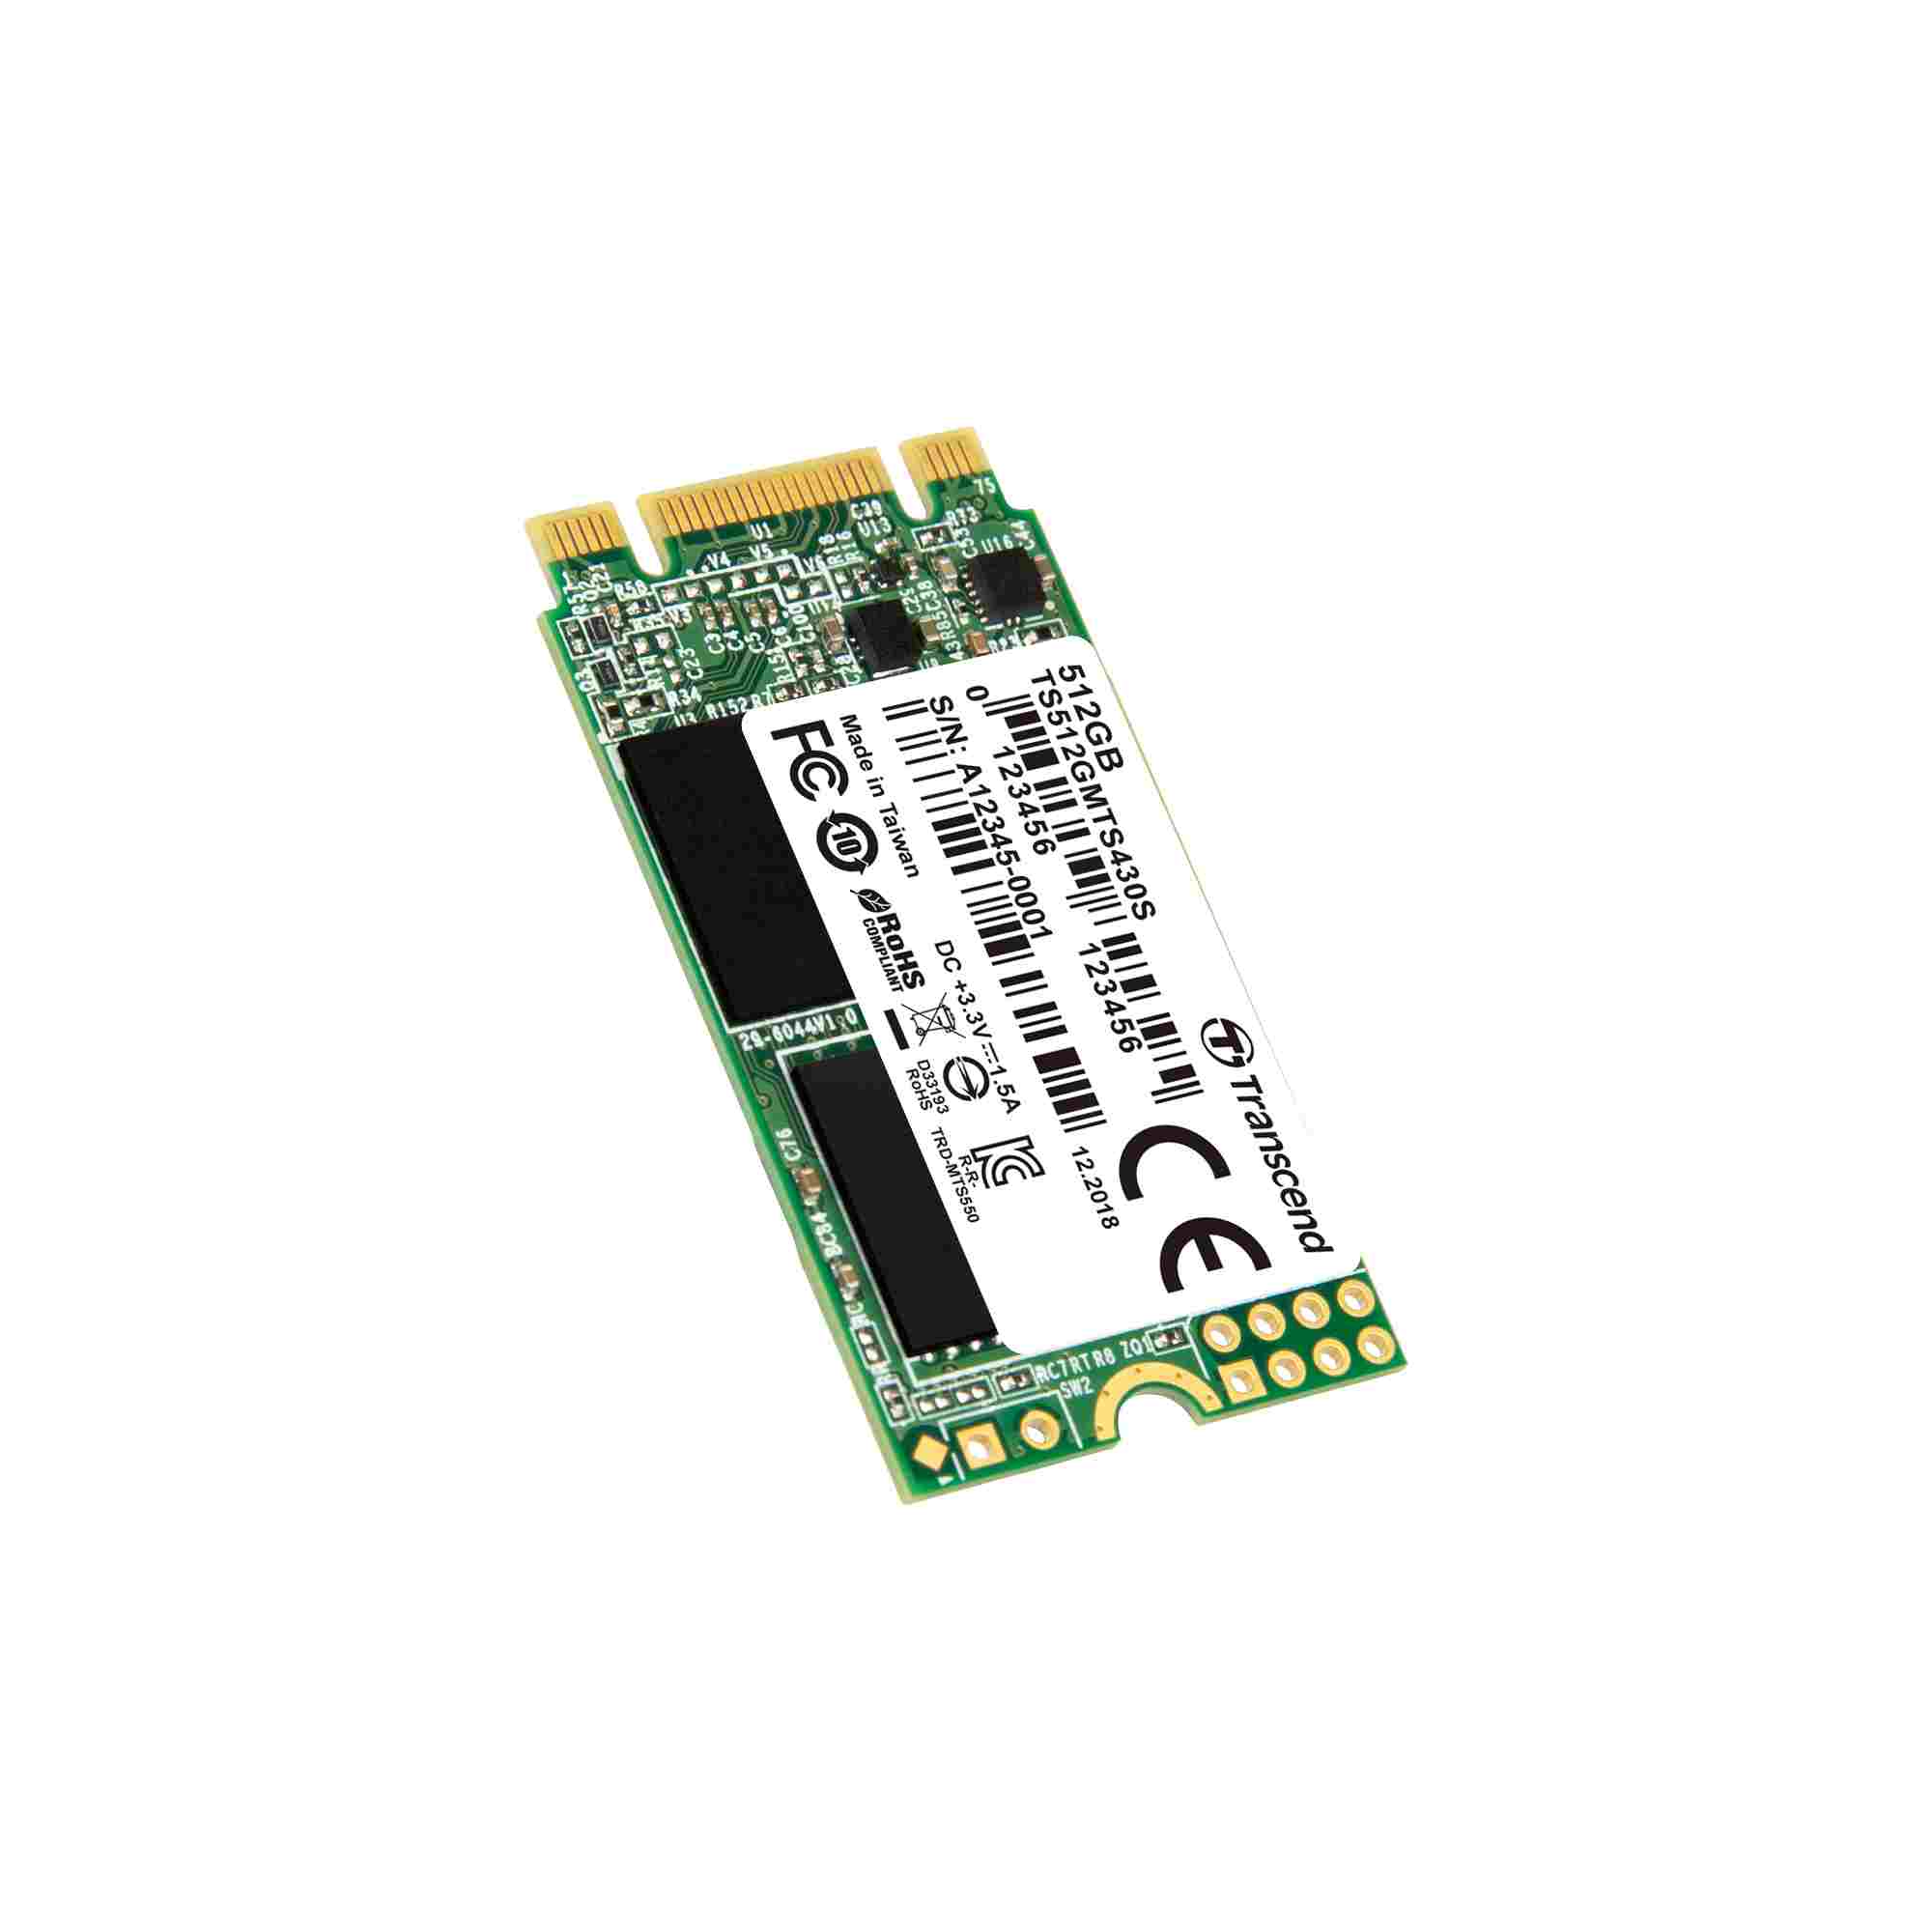 TRANSCEND Industrial SSD MTS430S 512GB, M.2 2242, SATA III 6 Gb/s, TLC1 